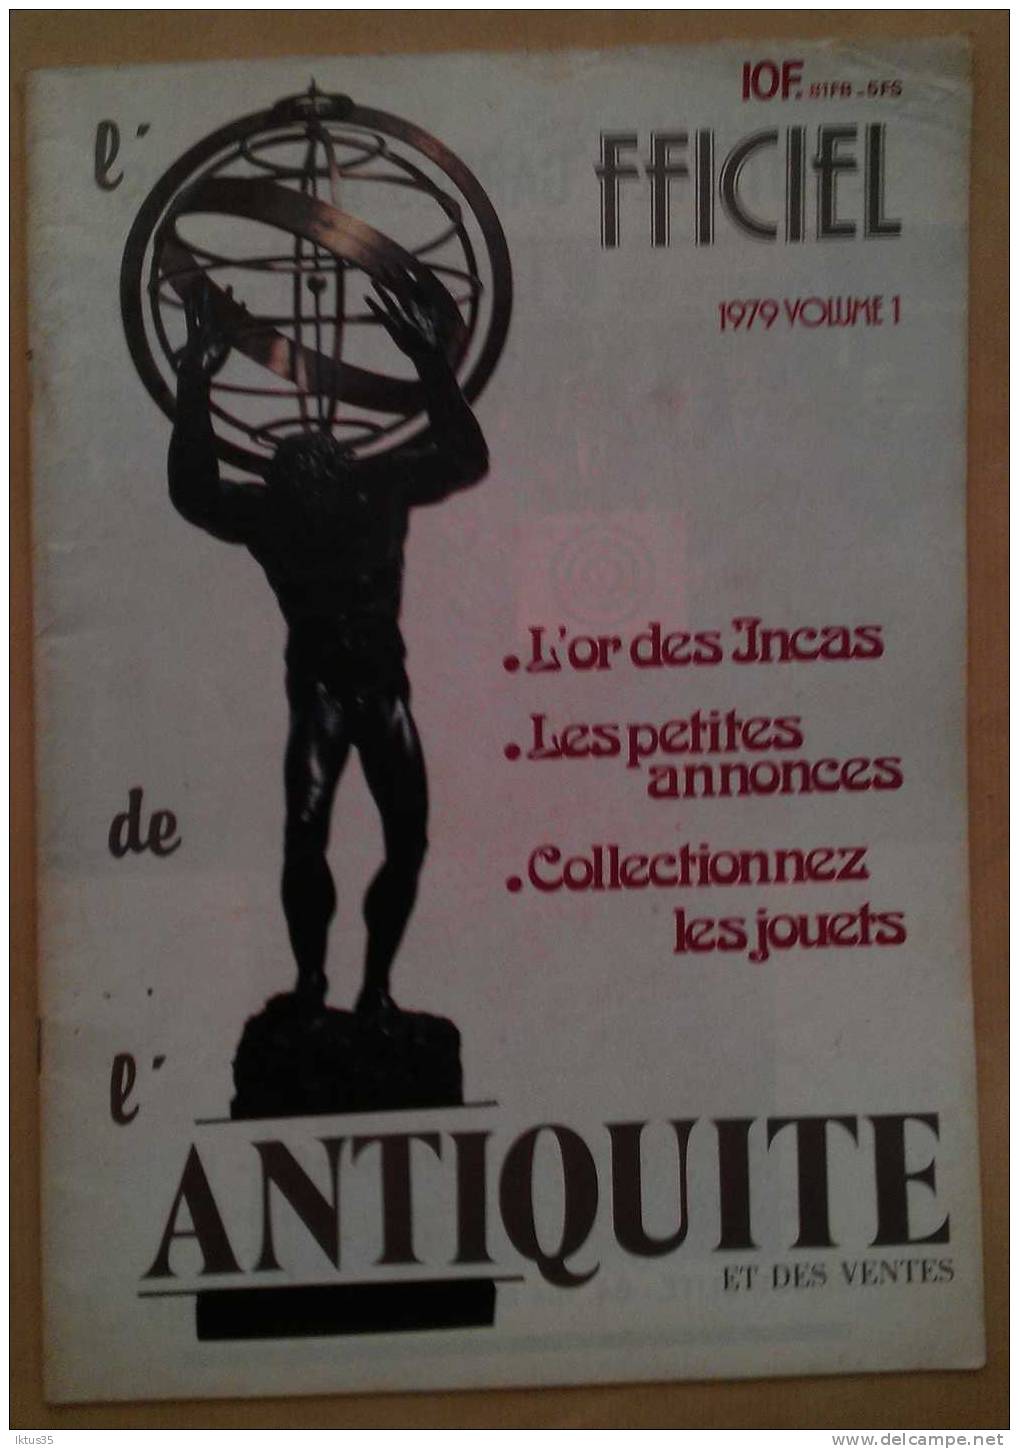 L'OFFICIEL DE L'ANTIQUITE ET DES VENTES-REVUE N°1 DE 1979-ART PATE DE VERRE-OR DES INCAS - Brocantes & Collections